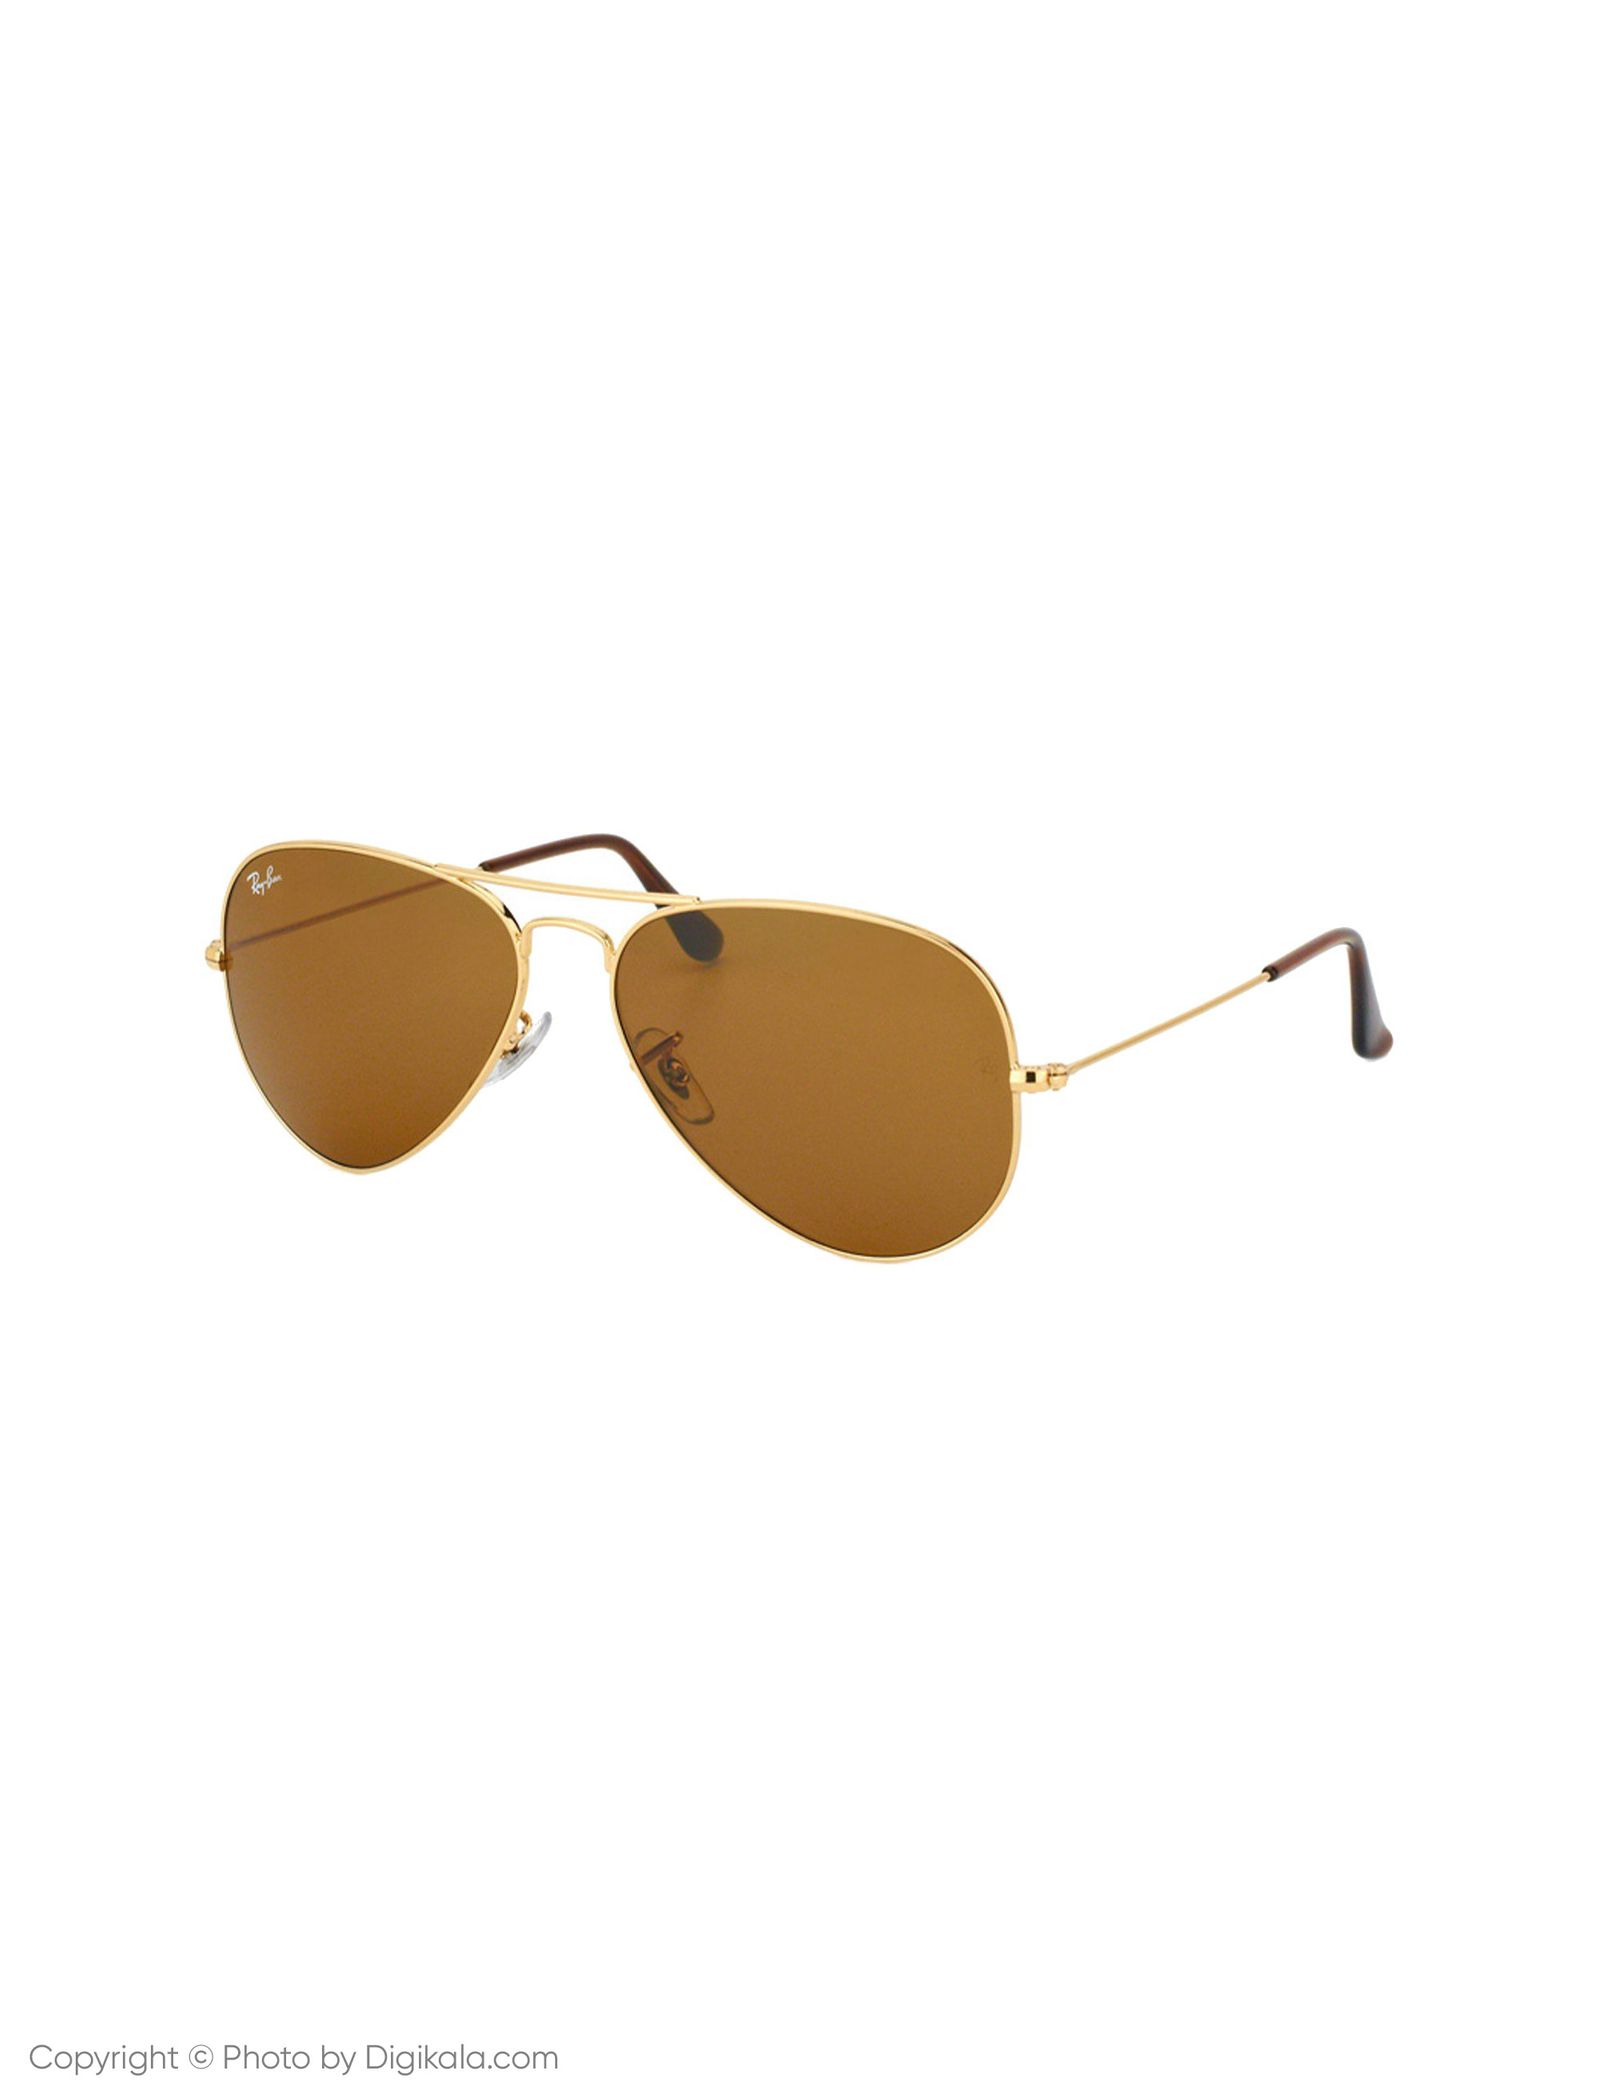 عینک آفتابی ری بن مدل 3025-001/33-58 - طلایی - 4